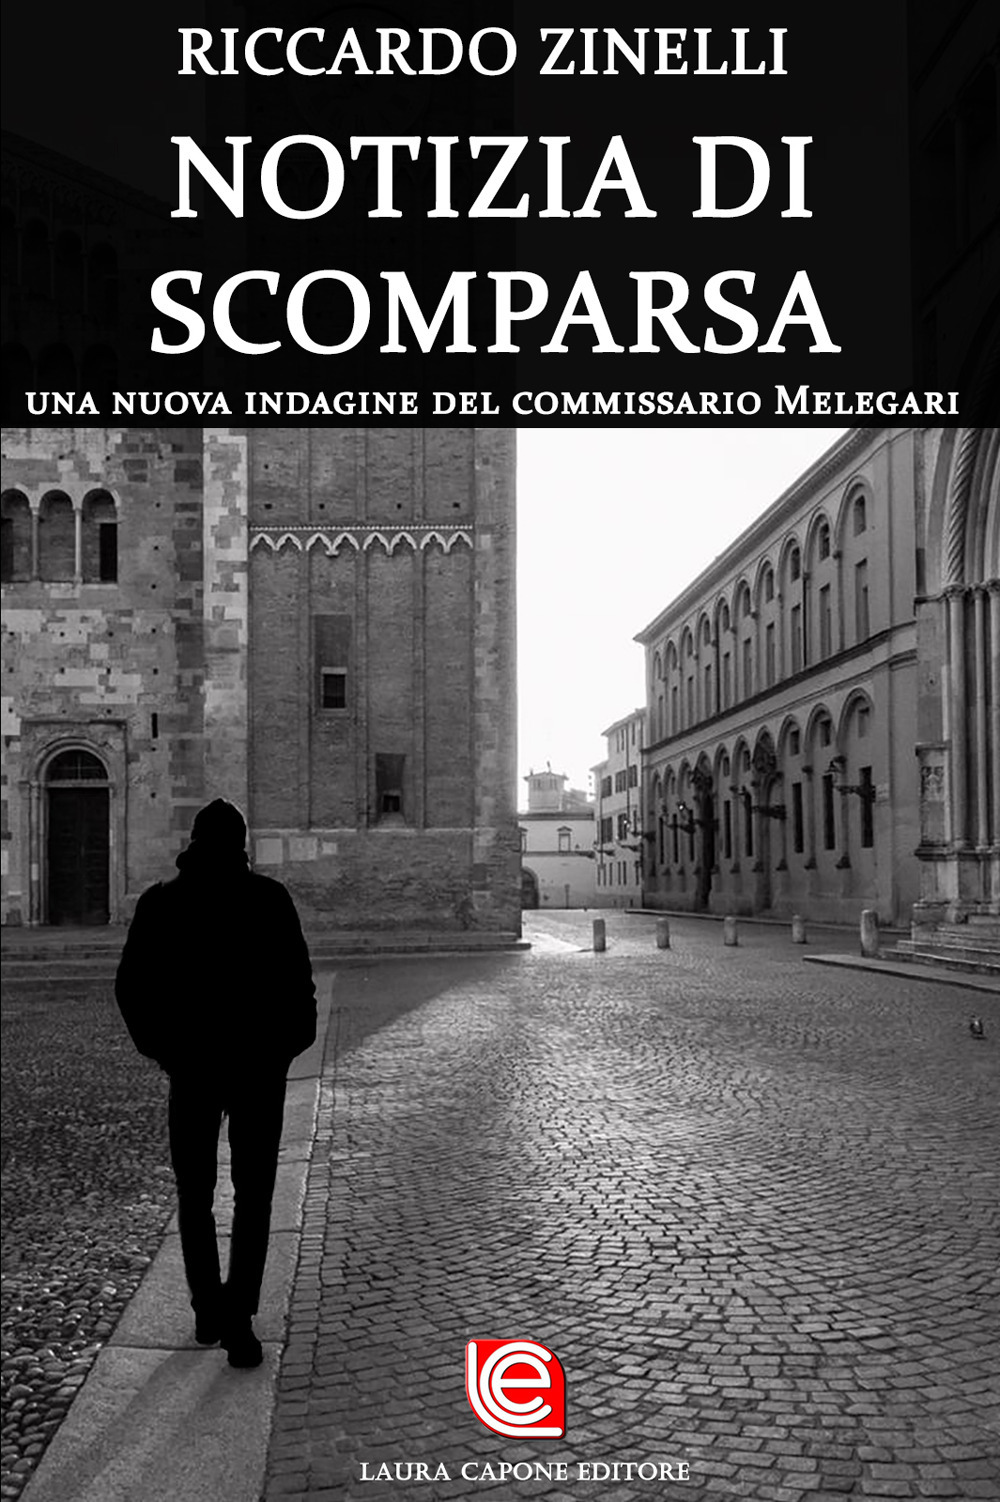 Libri Riccardo Zinelli - Notizia Di Scomparsa. Una Nuova Indagine Del Commissario Melegari NUOVO SIGILLATO, EDIZIONE DEL 21/07/2020 SUBITO DISPONIBILE